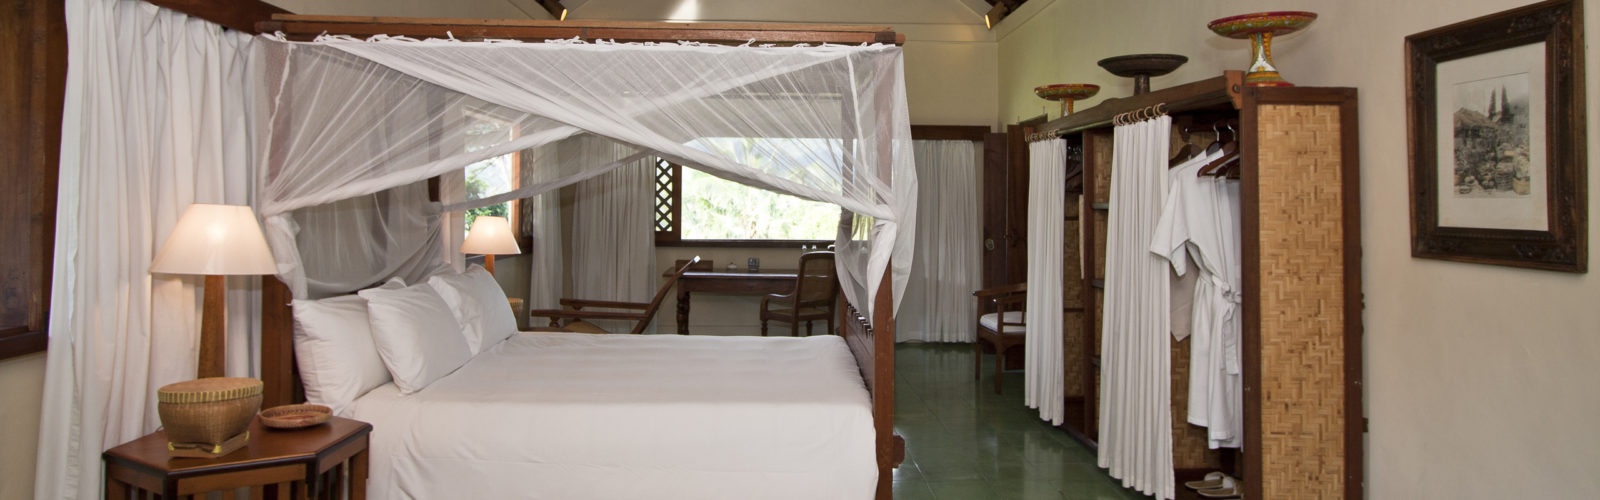 alila-manggis-villa-bedroom